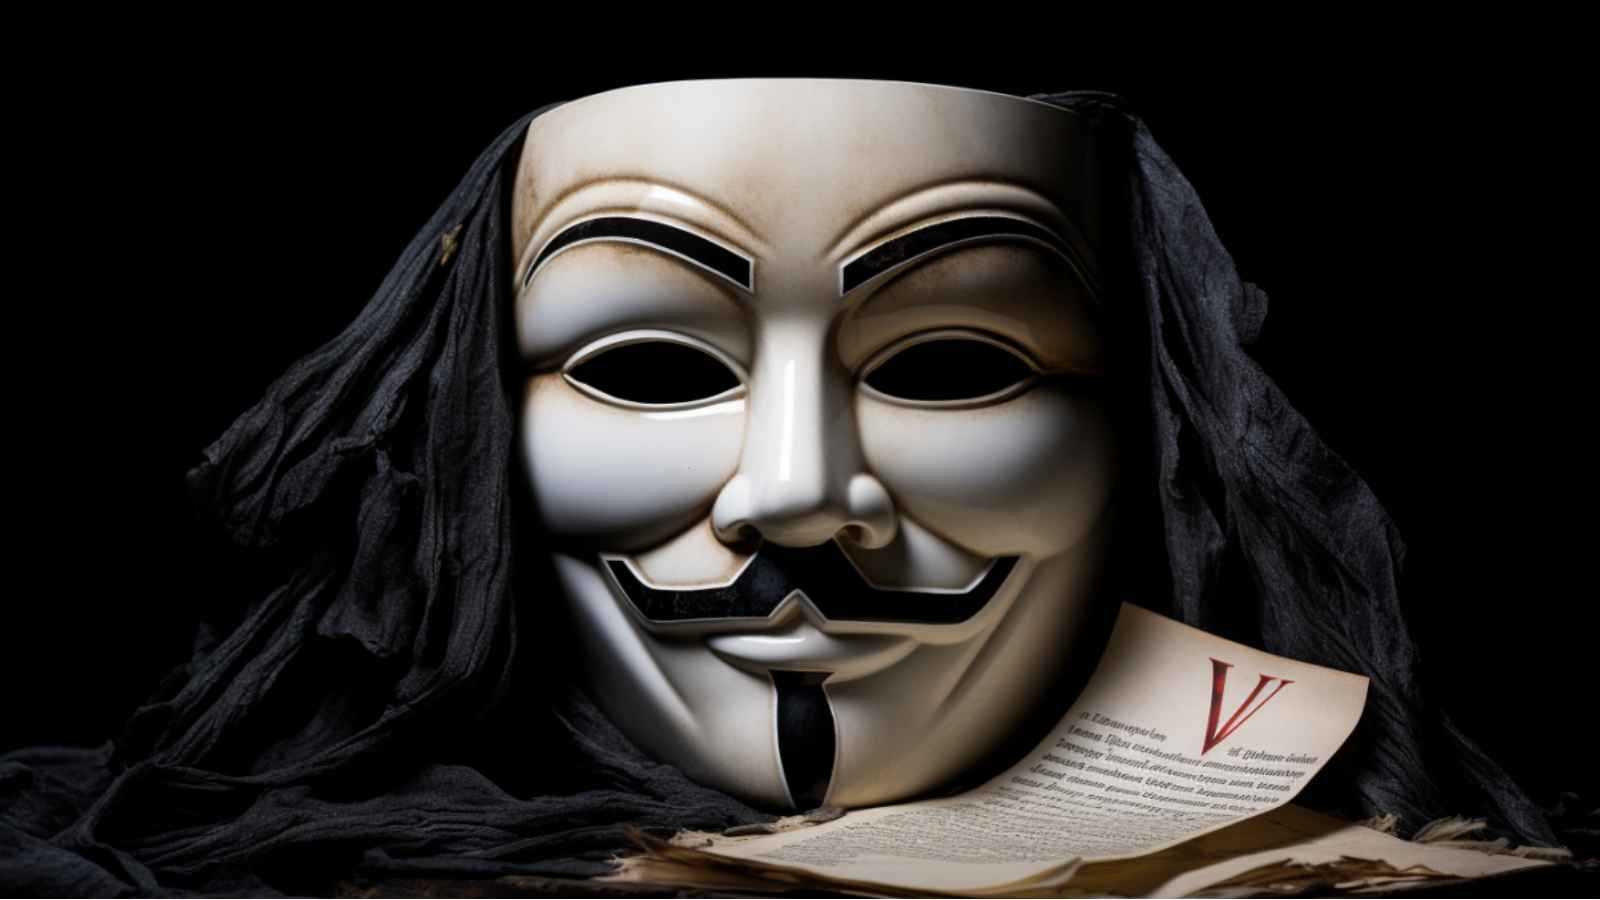 Le masque de Guy Fawkes dans V pour Vendetta